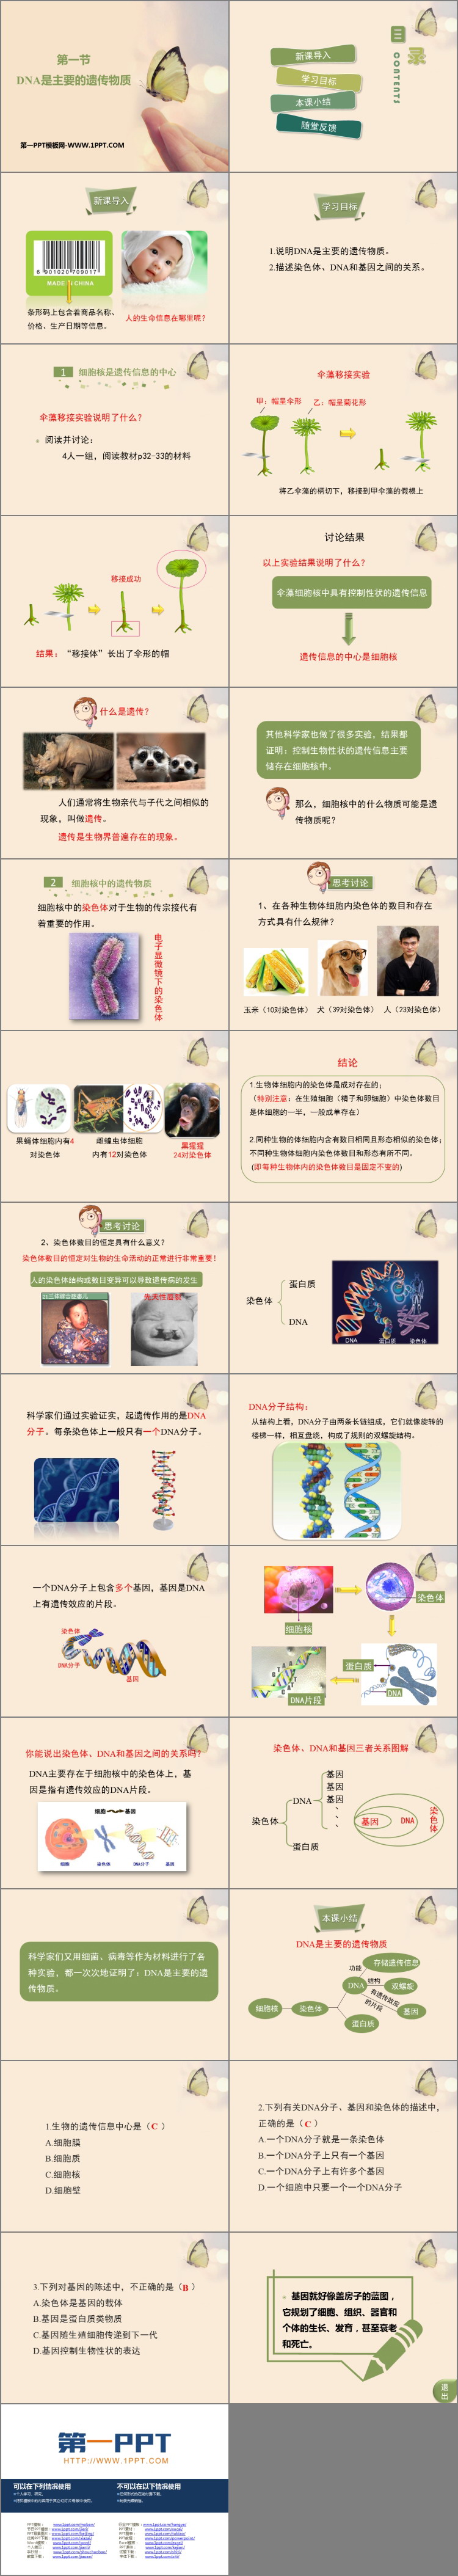 《DNA是主要的遗传物质》PPT教学课件-预览图02